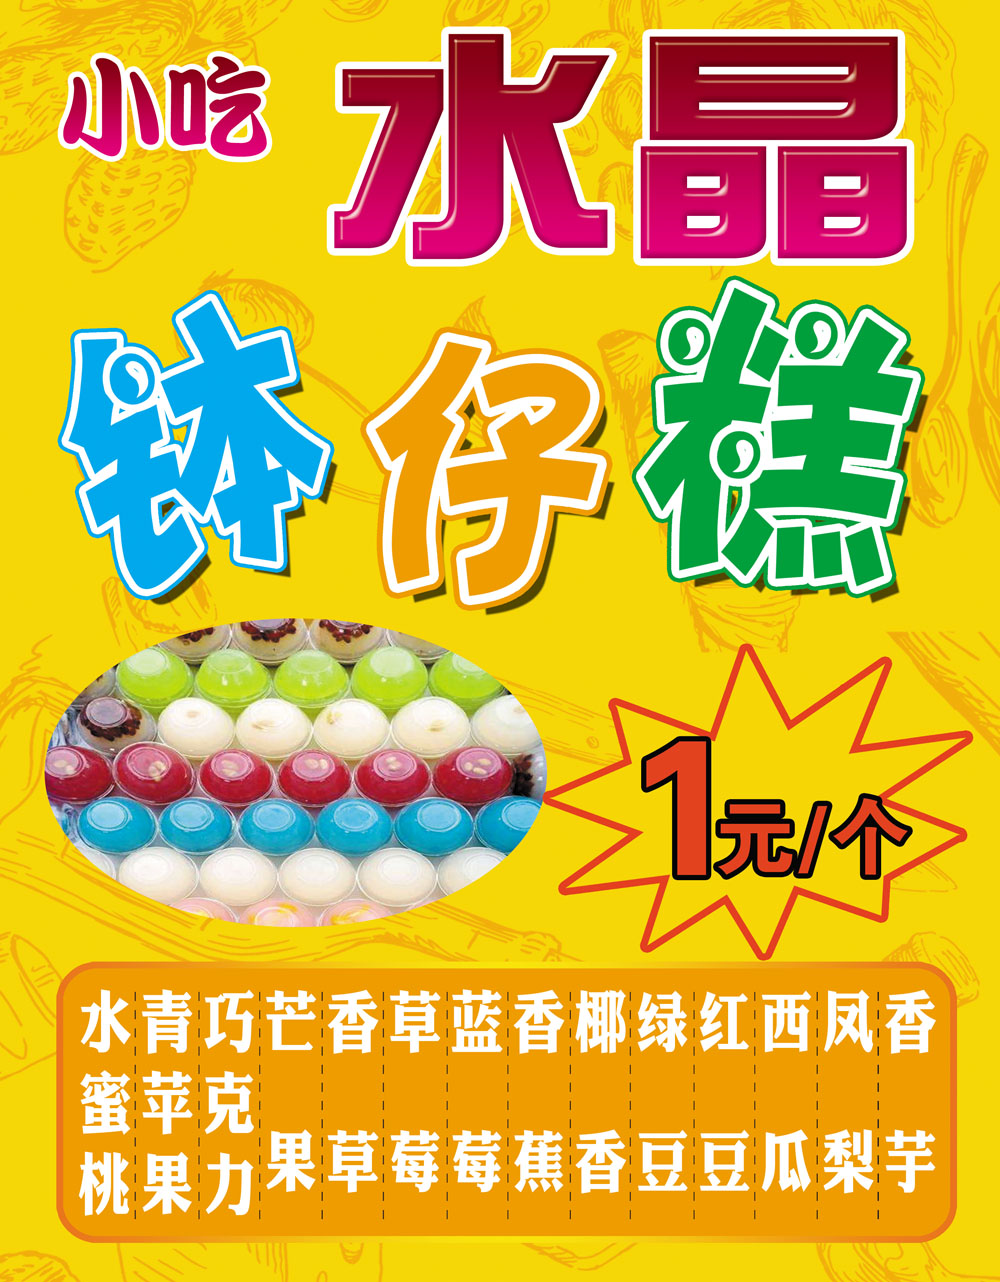 M768特色小吃水果钵仔糕种类样式甜品地摊车图片1291喷绘海报印制